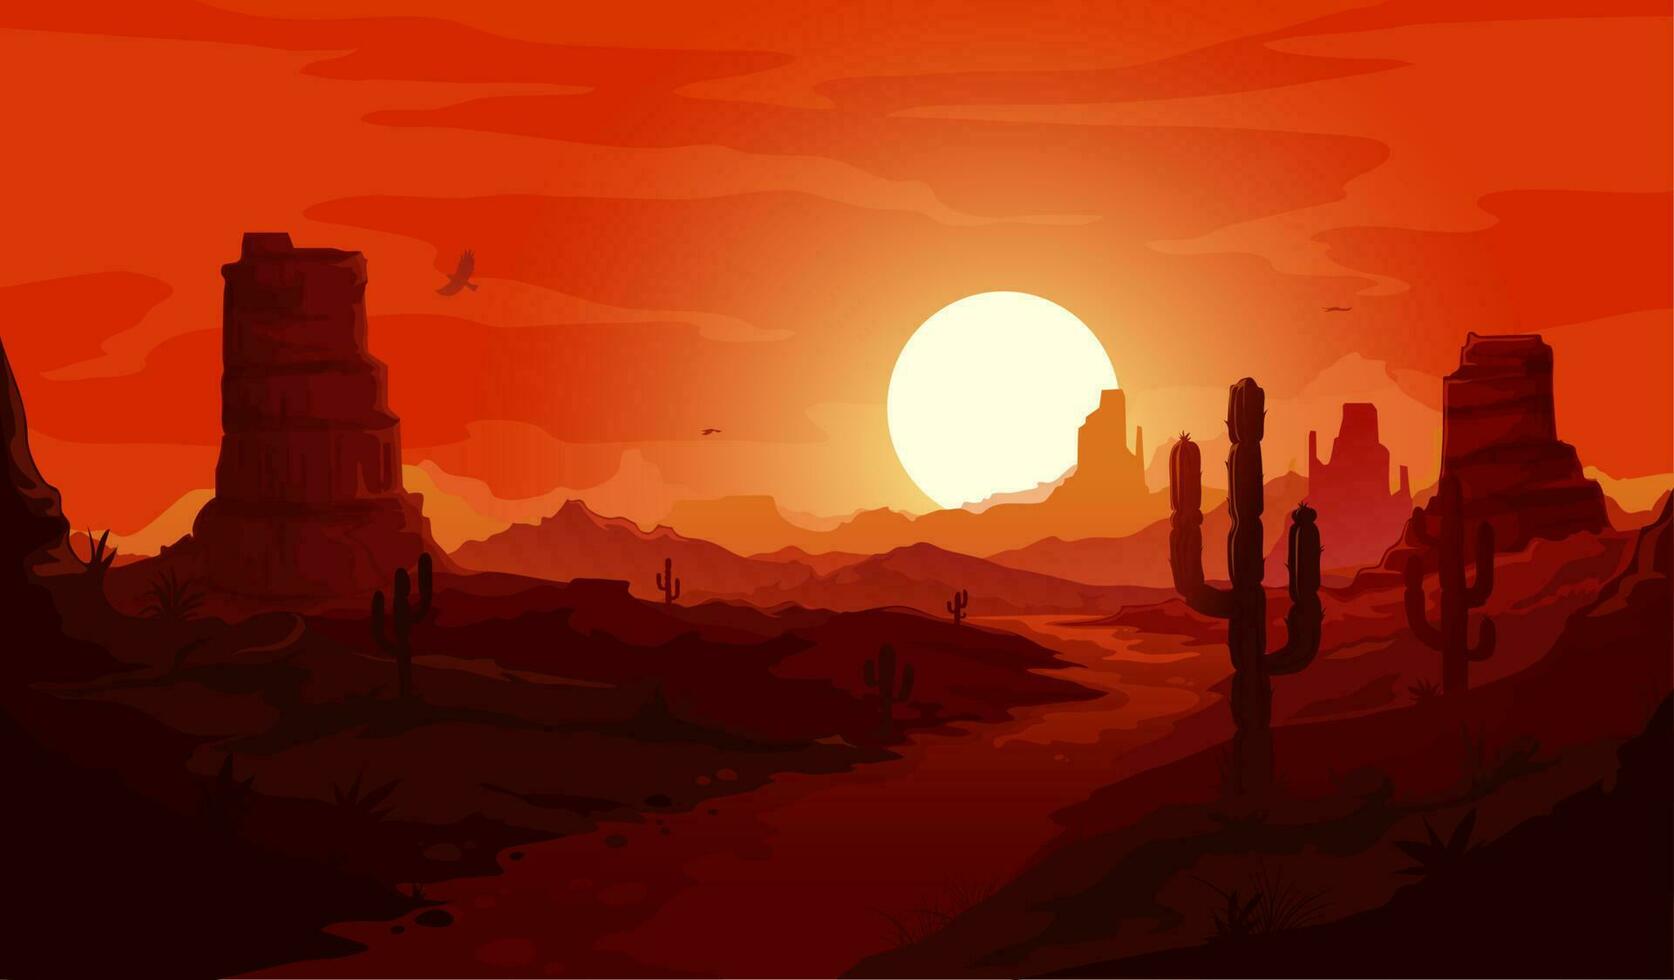 amerikanisch Wüste Landschaft, Western Hintergrund vektor